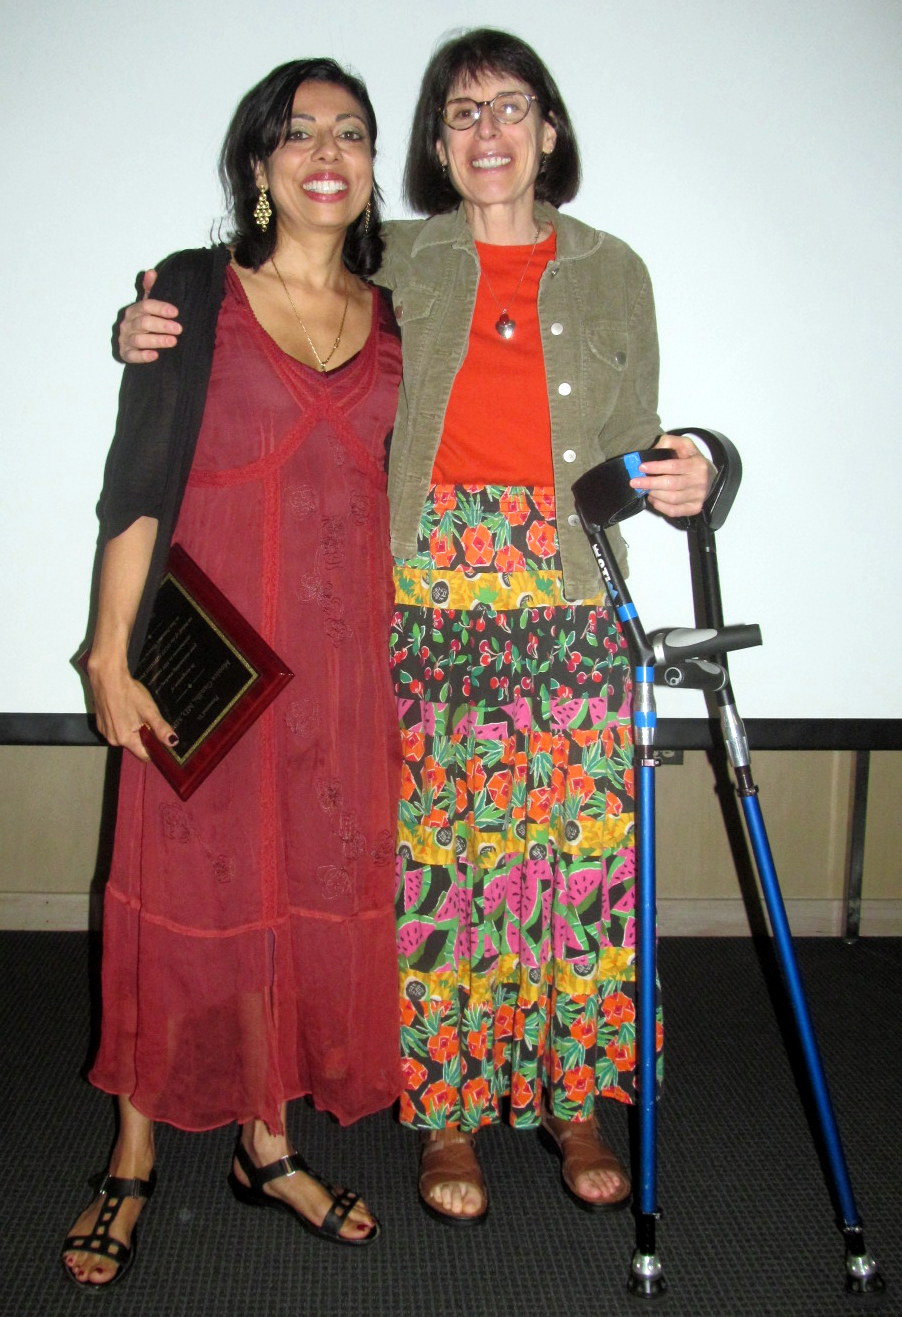 Dr. Meg Newman awarding Dr. Monica Gandhi the award in 2012